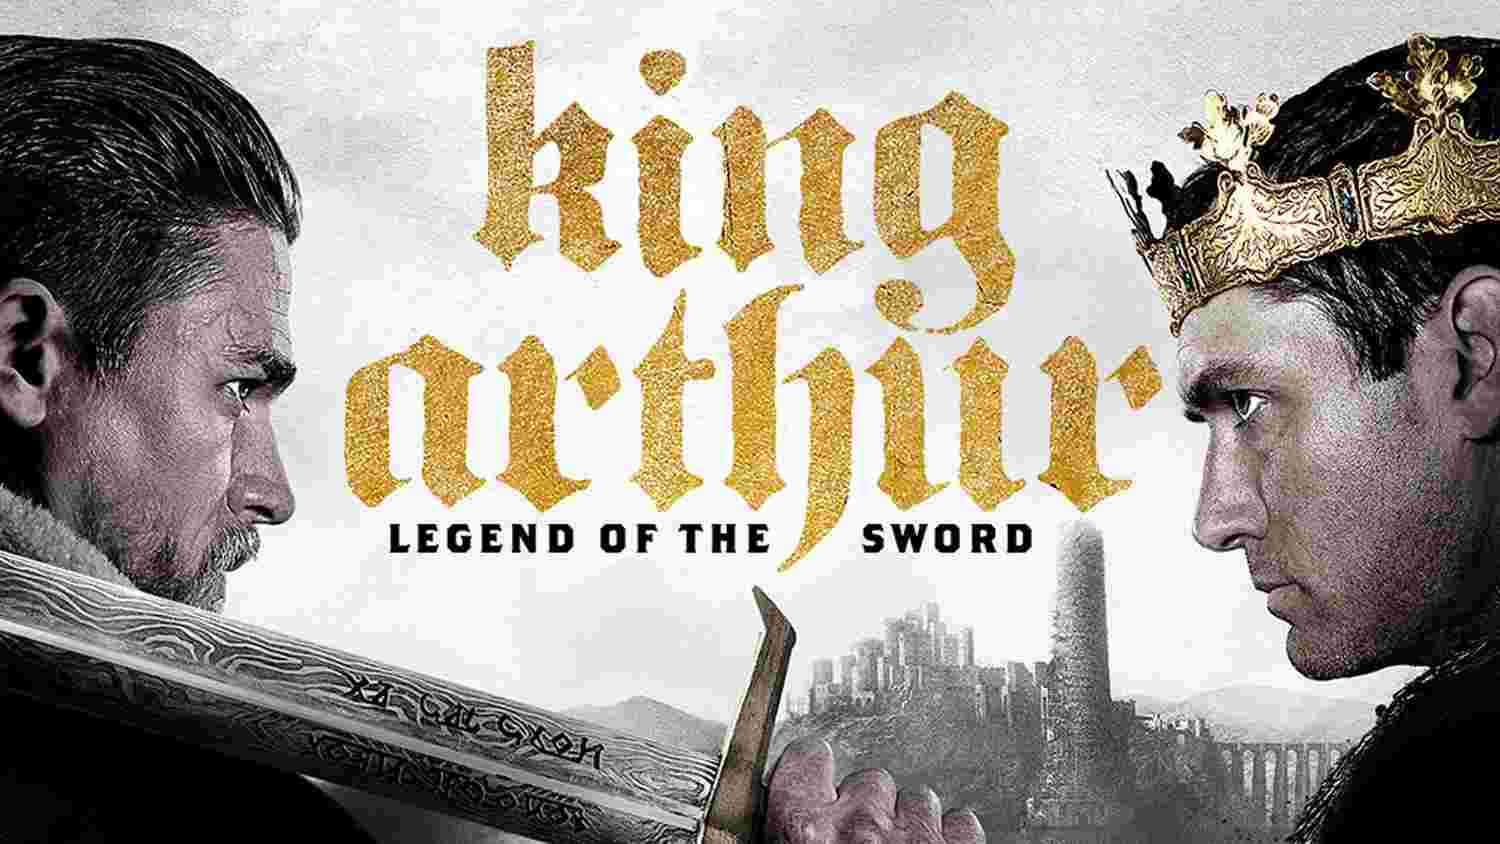 King Arthur: Legend of the Sword (2017) смотреть онлайн бесплатно